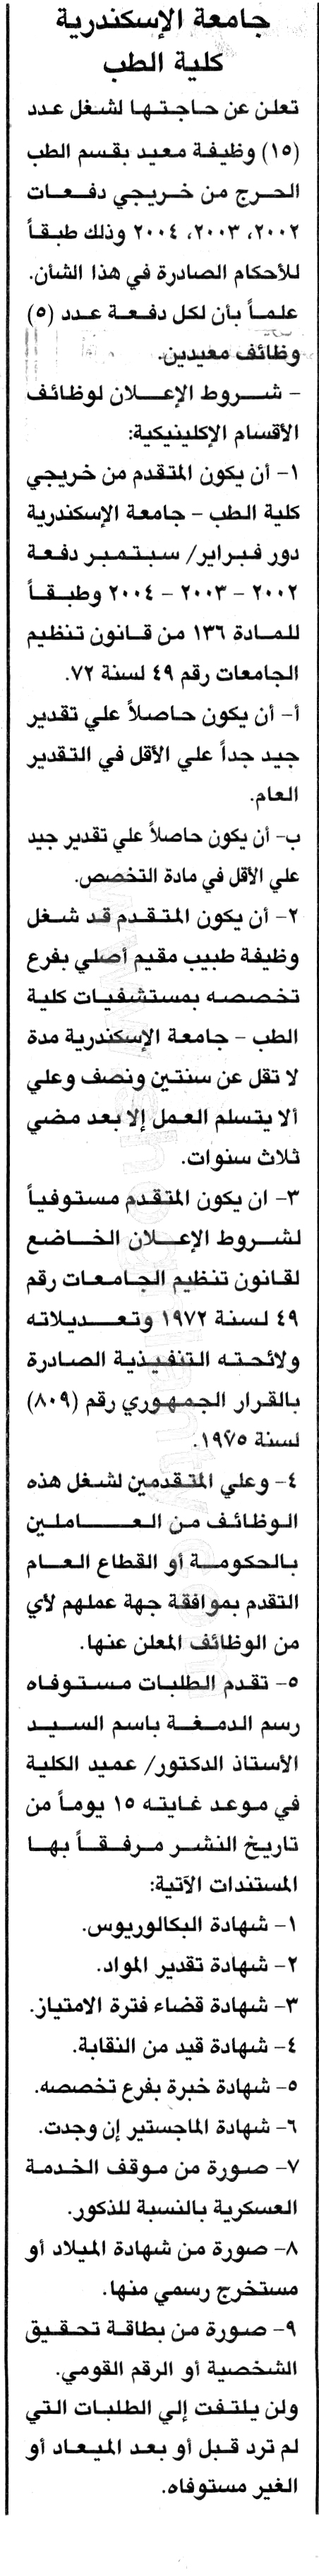 وظائف جامعة الاسكندرية 2019 1